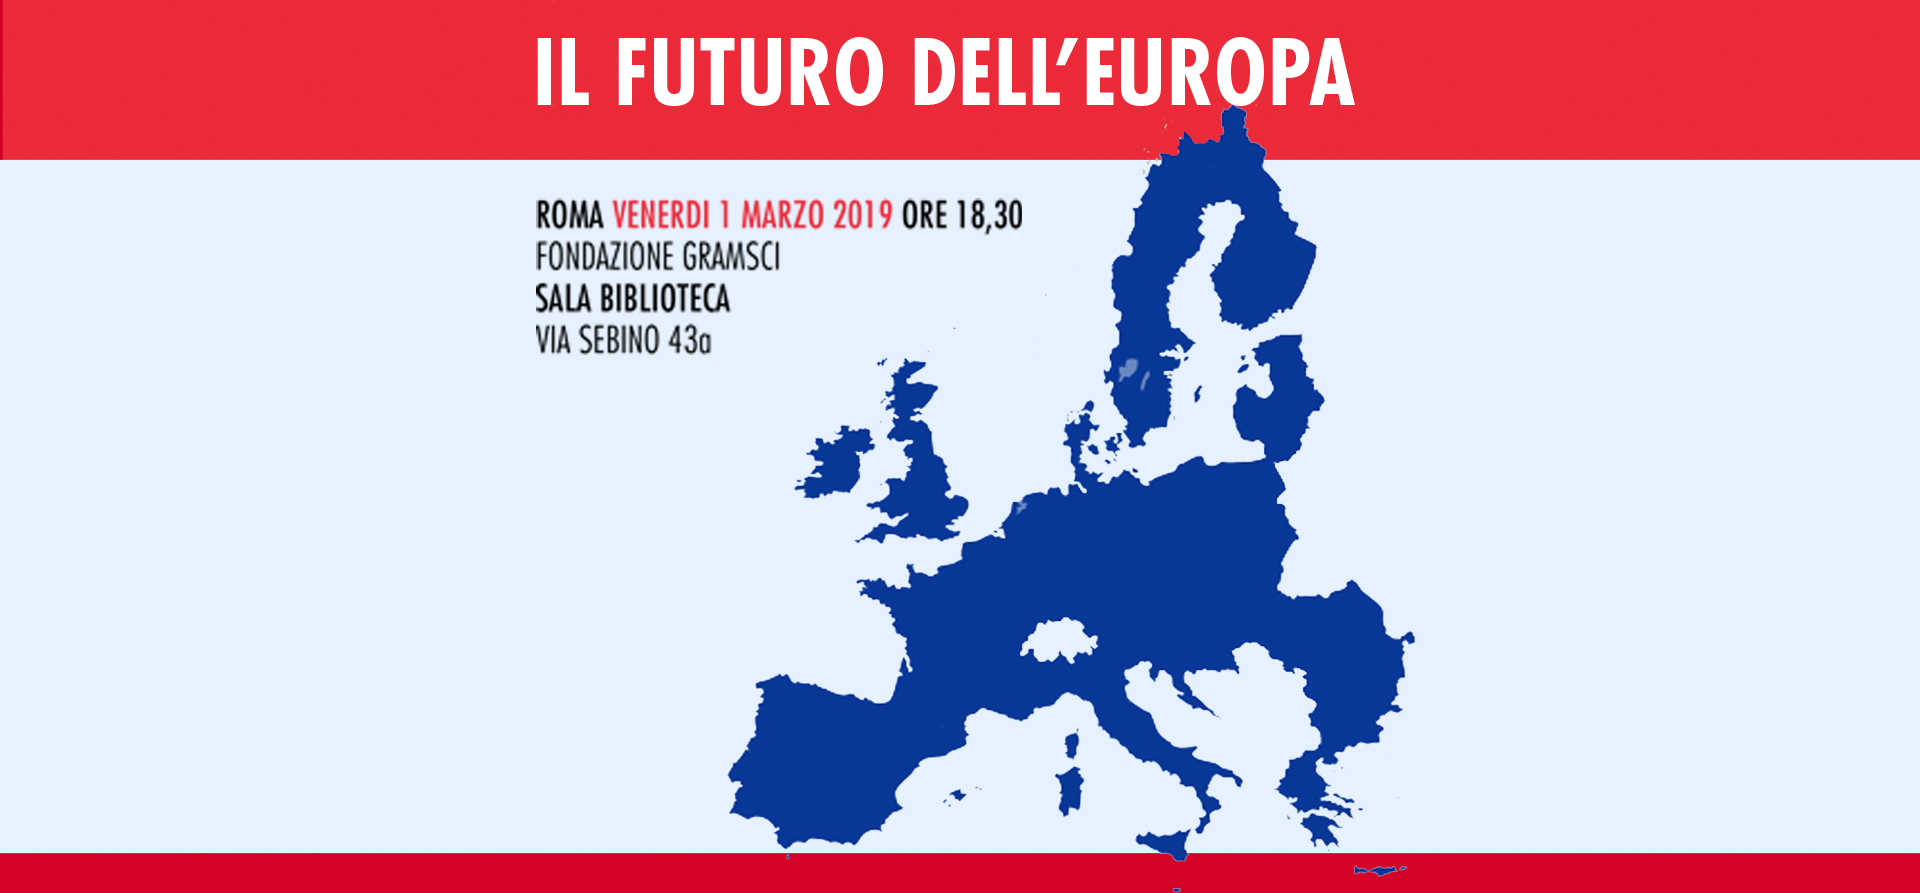 IL FUTURO DELL’EUROPA